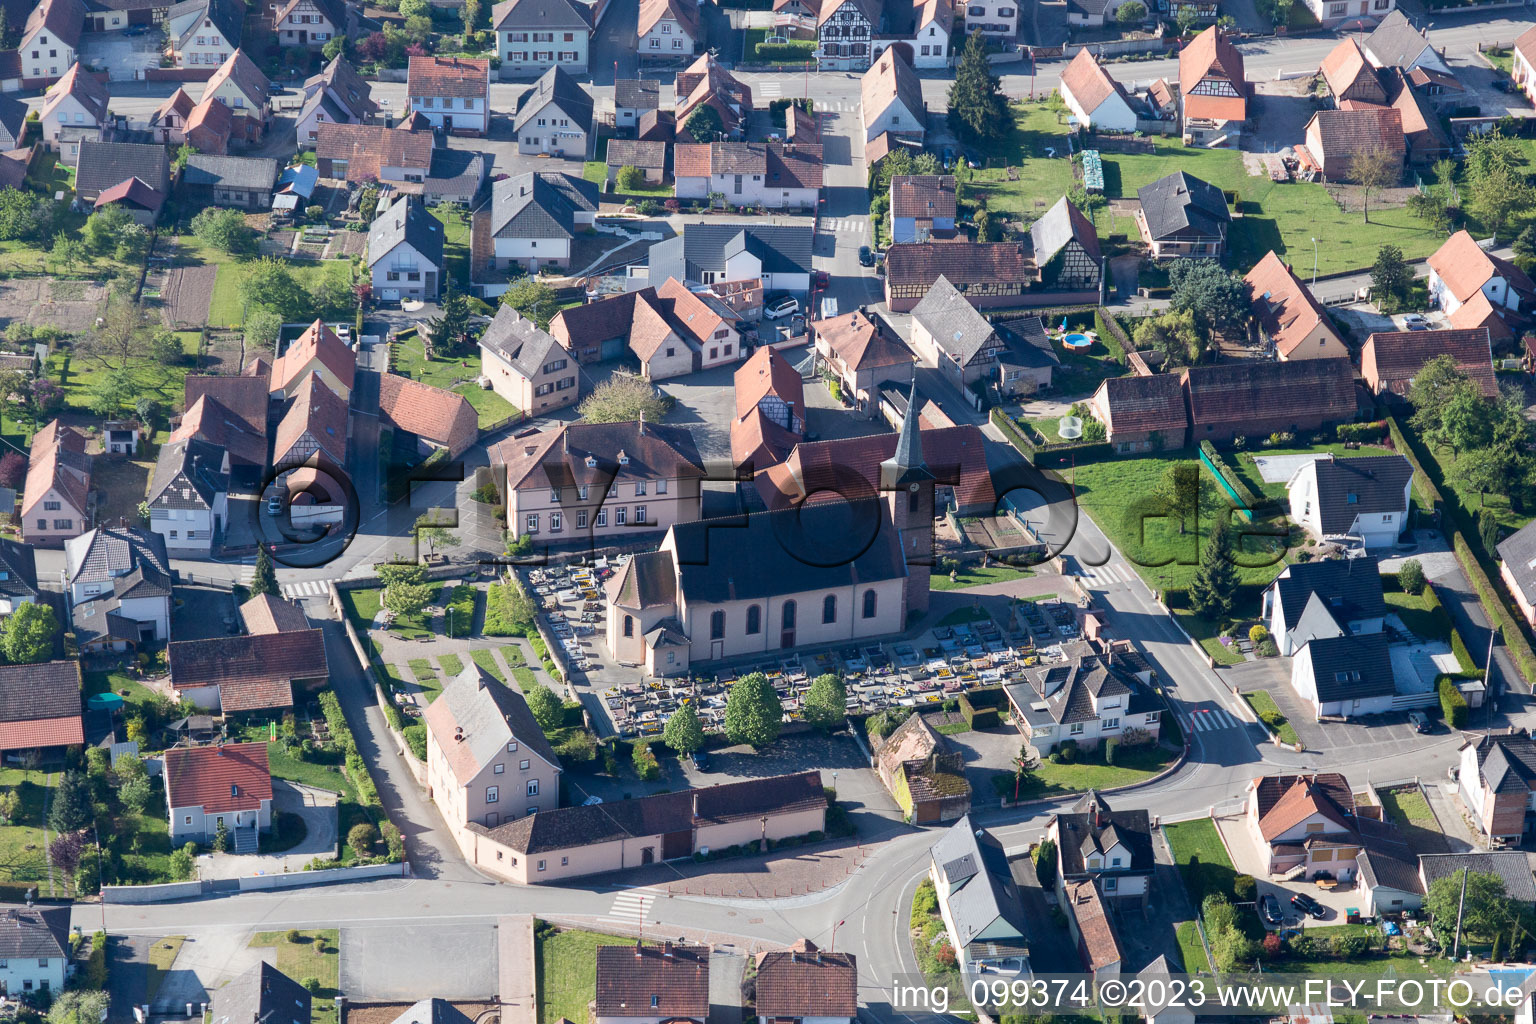 Eschbach im Bundesland Bas-Rhin, Frankreich aus der Luft betrachtet